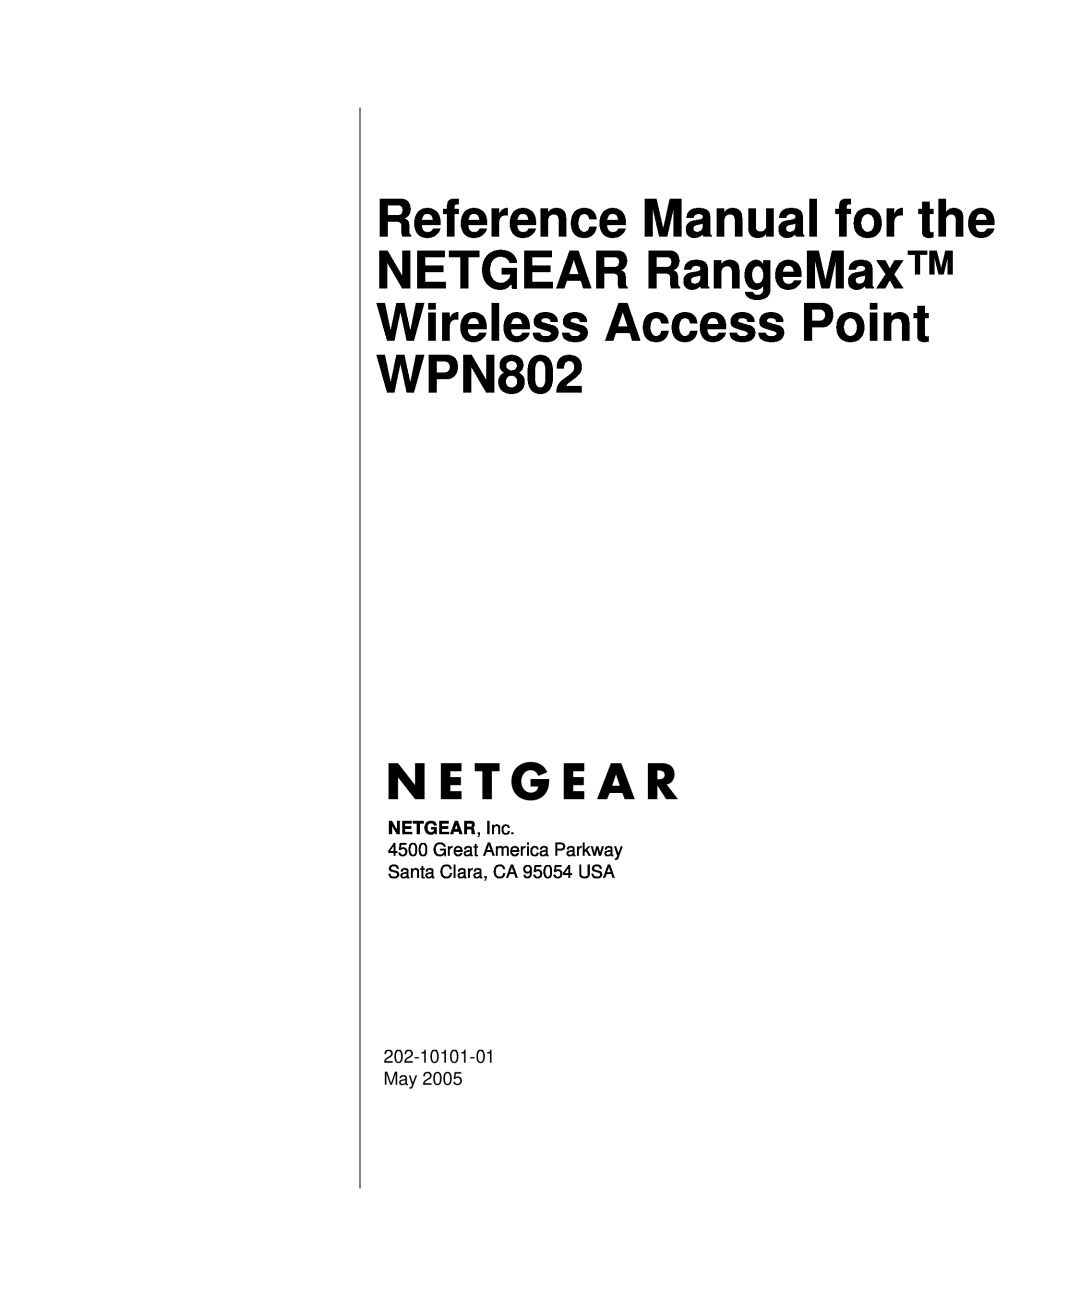 NETGEAR WPN802 manual NETGEAR, Inc, Great America Parkway Santa Clara, CA 95054 USA, 202-10101-01 May 